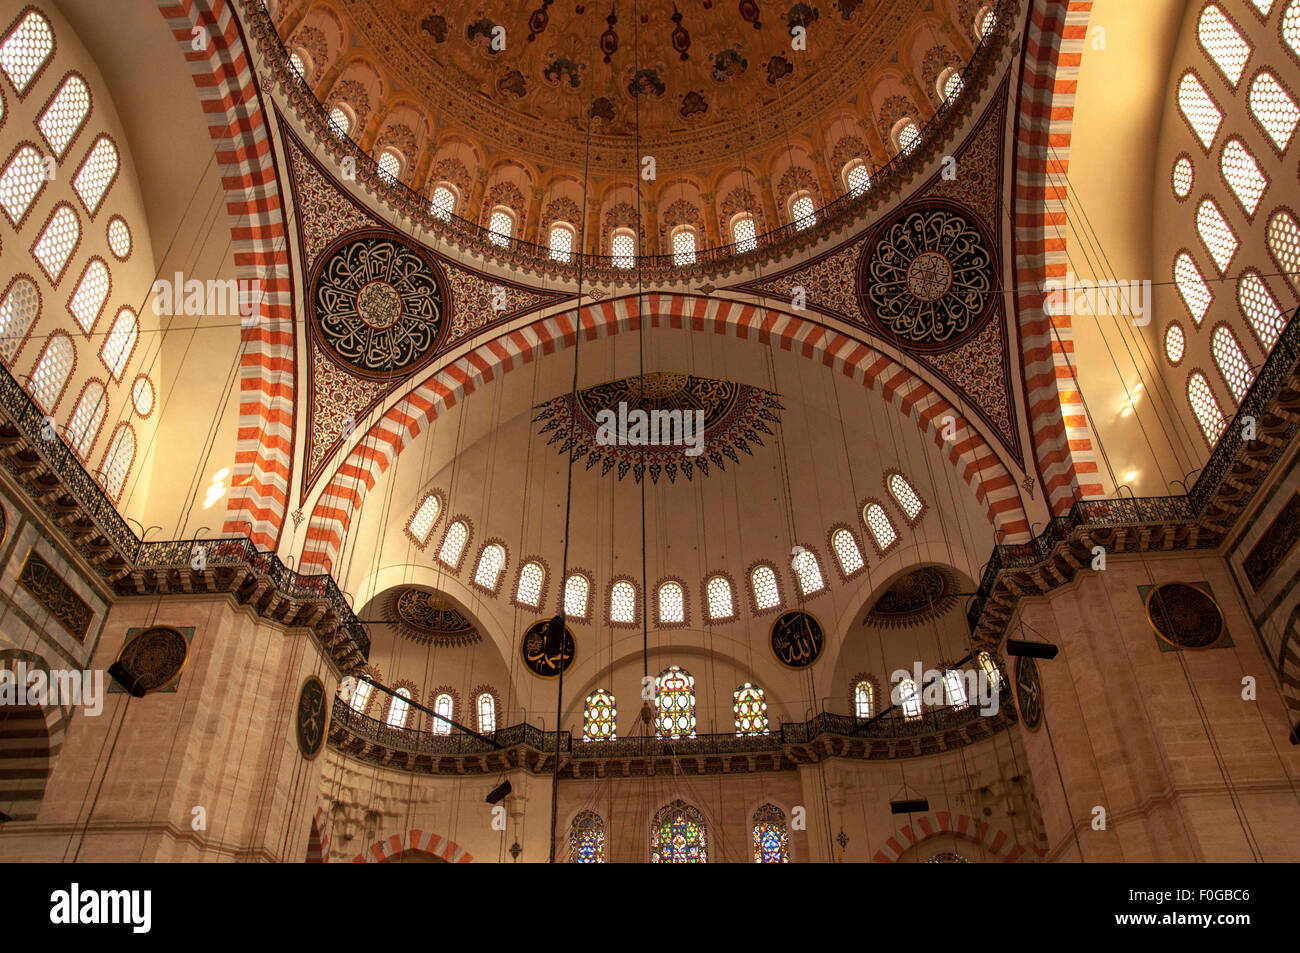 Détail du plafond de la Süleymaniye Camii (Mosquée de Soliman) à Istanbul, Turquie. Banque D'Images